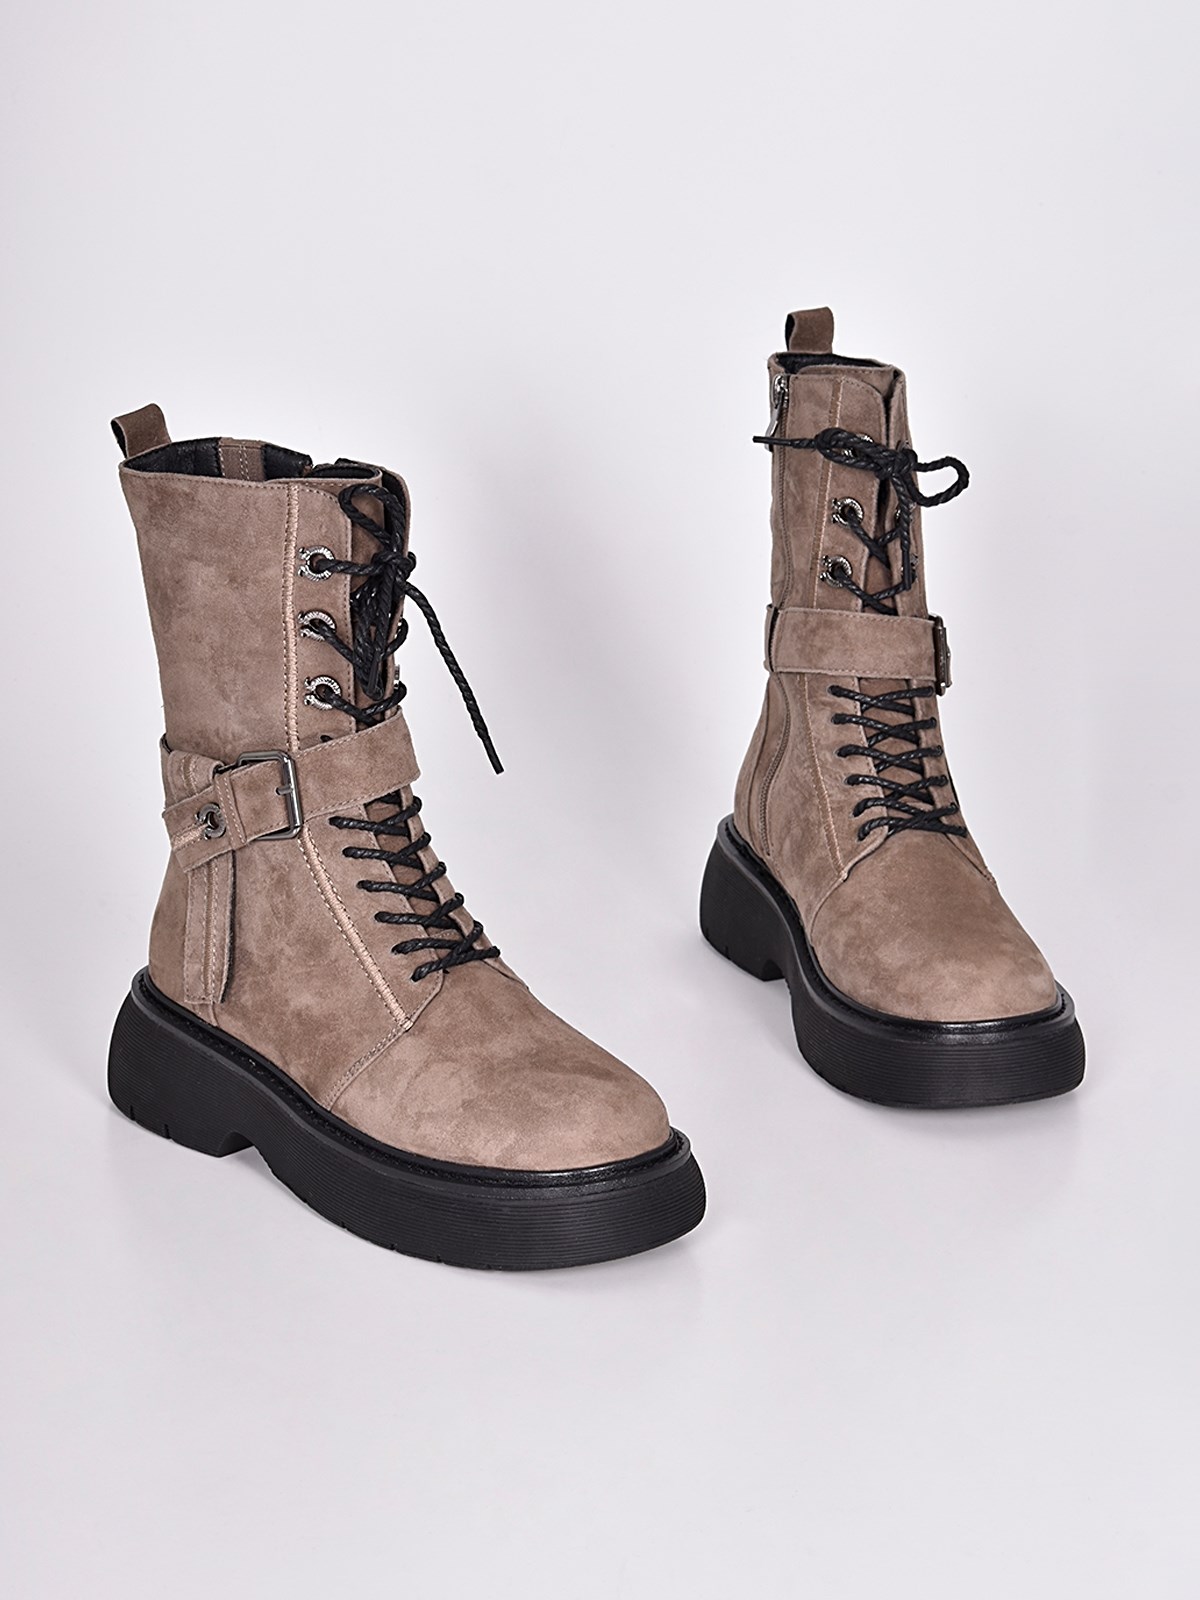 Высокие ботинки из натуральной замши светло-коричневого цвета со стильной  фурнитурой купить в Казани от производителя |Сhewhite